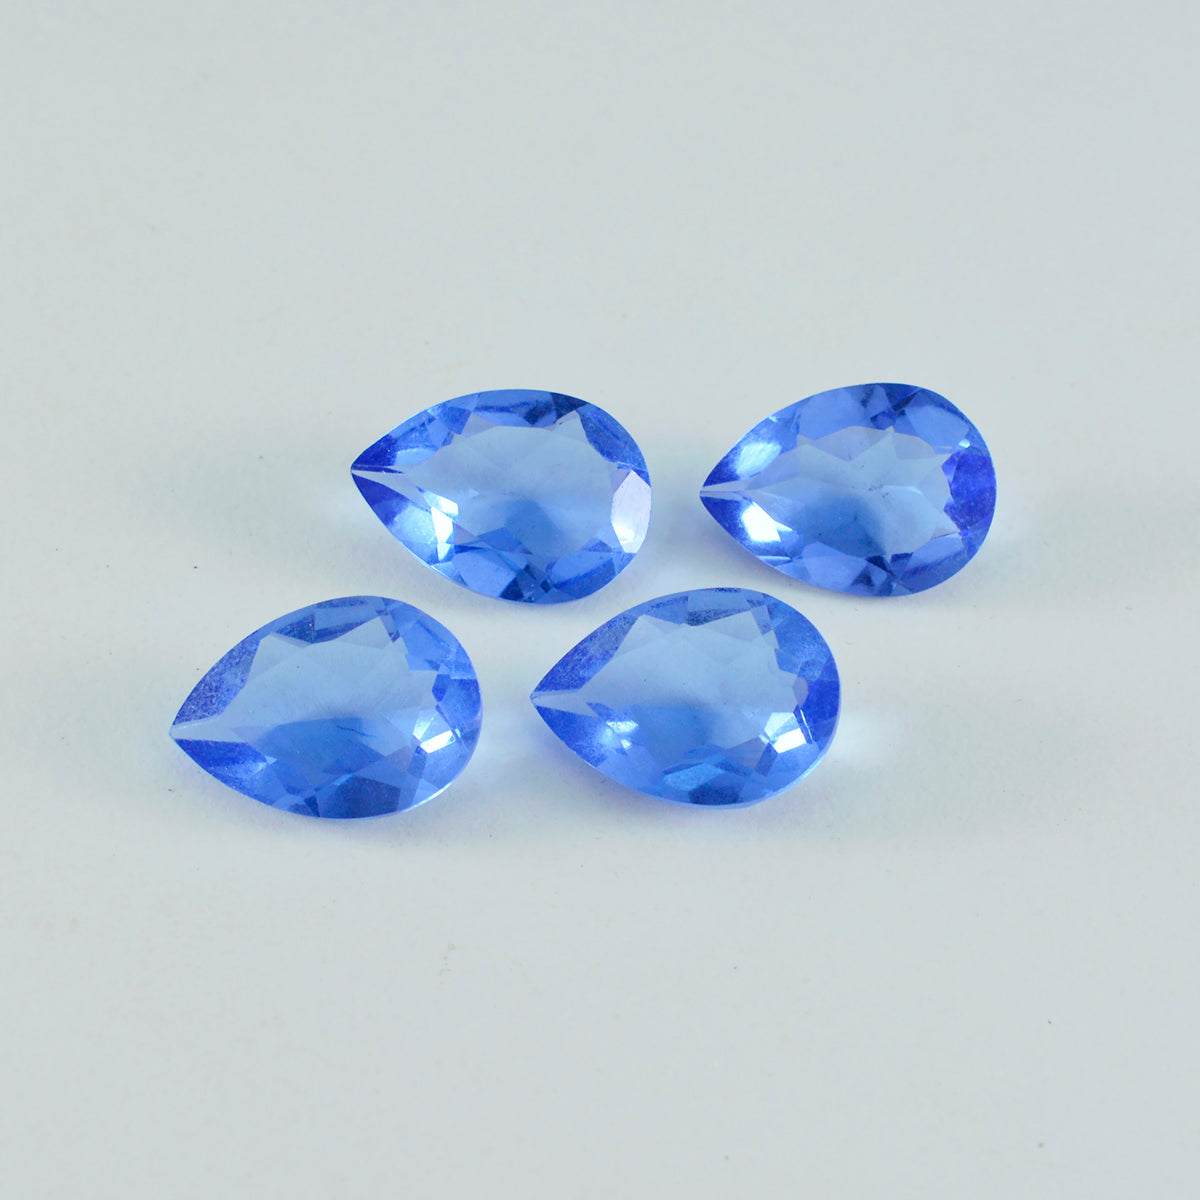 Riyogems 1 pieza zafiro azul CZ facetado 12x16 mm forma de pera piedra suelta de buena calidad